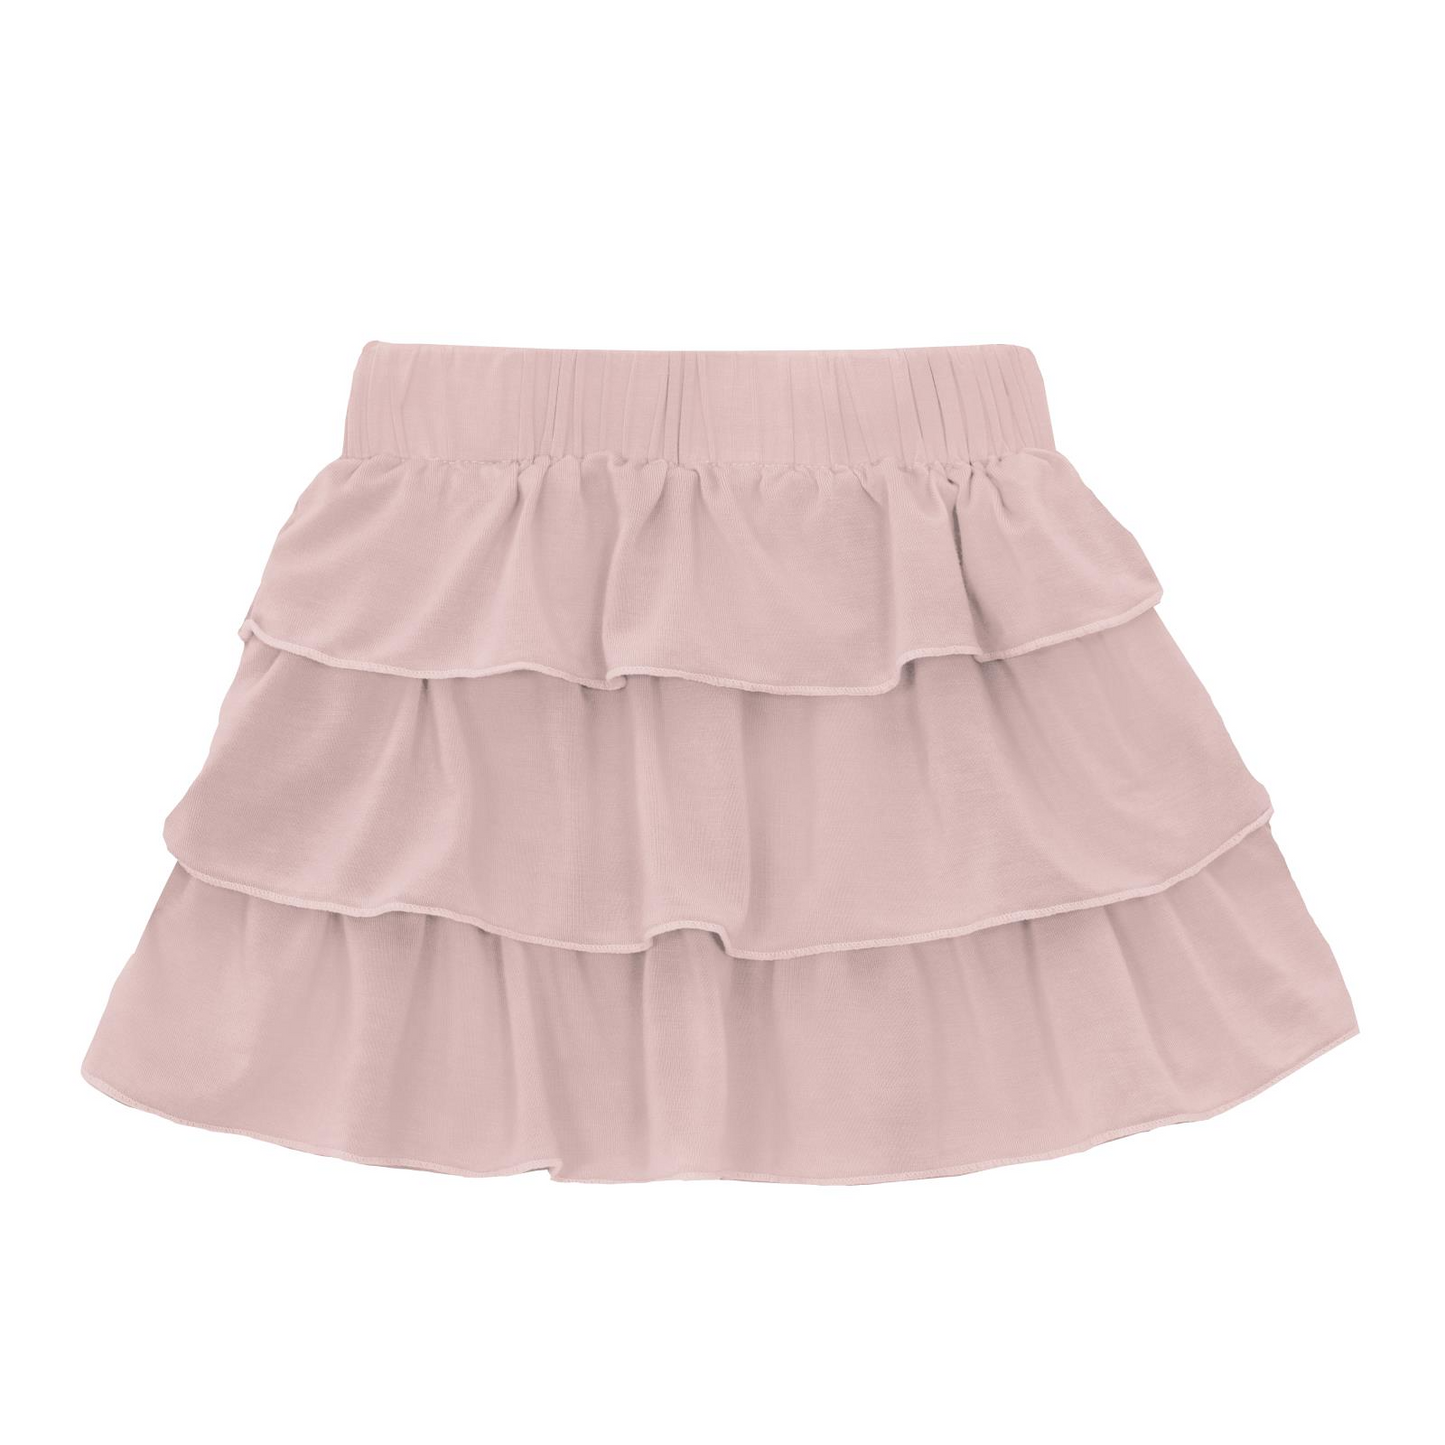 Last One - 3T: Layered Ruffle Skirt - Baby Rose